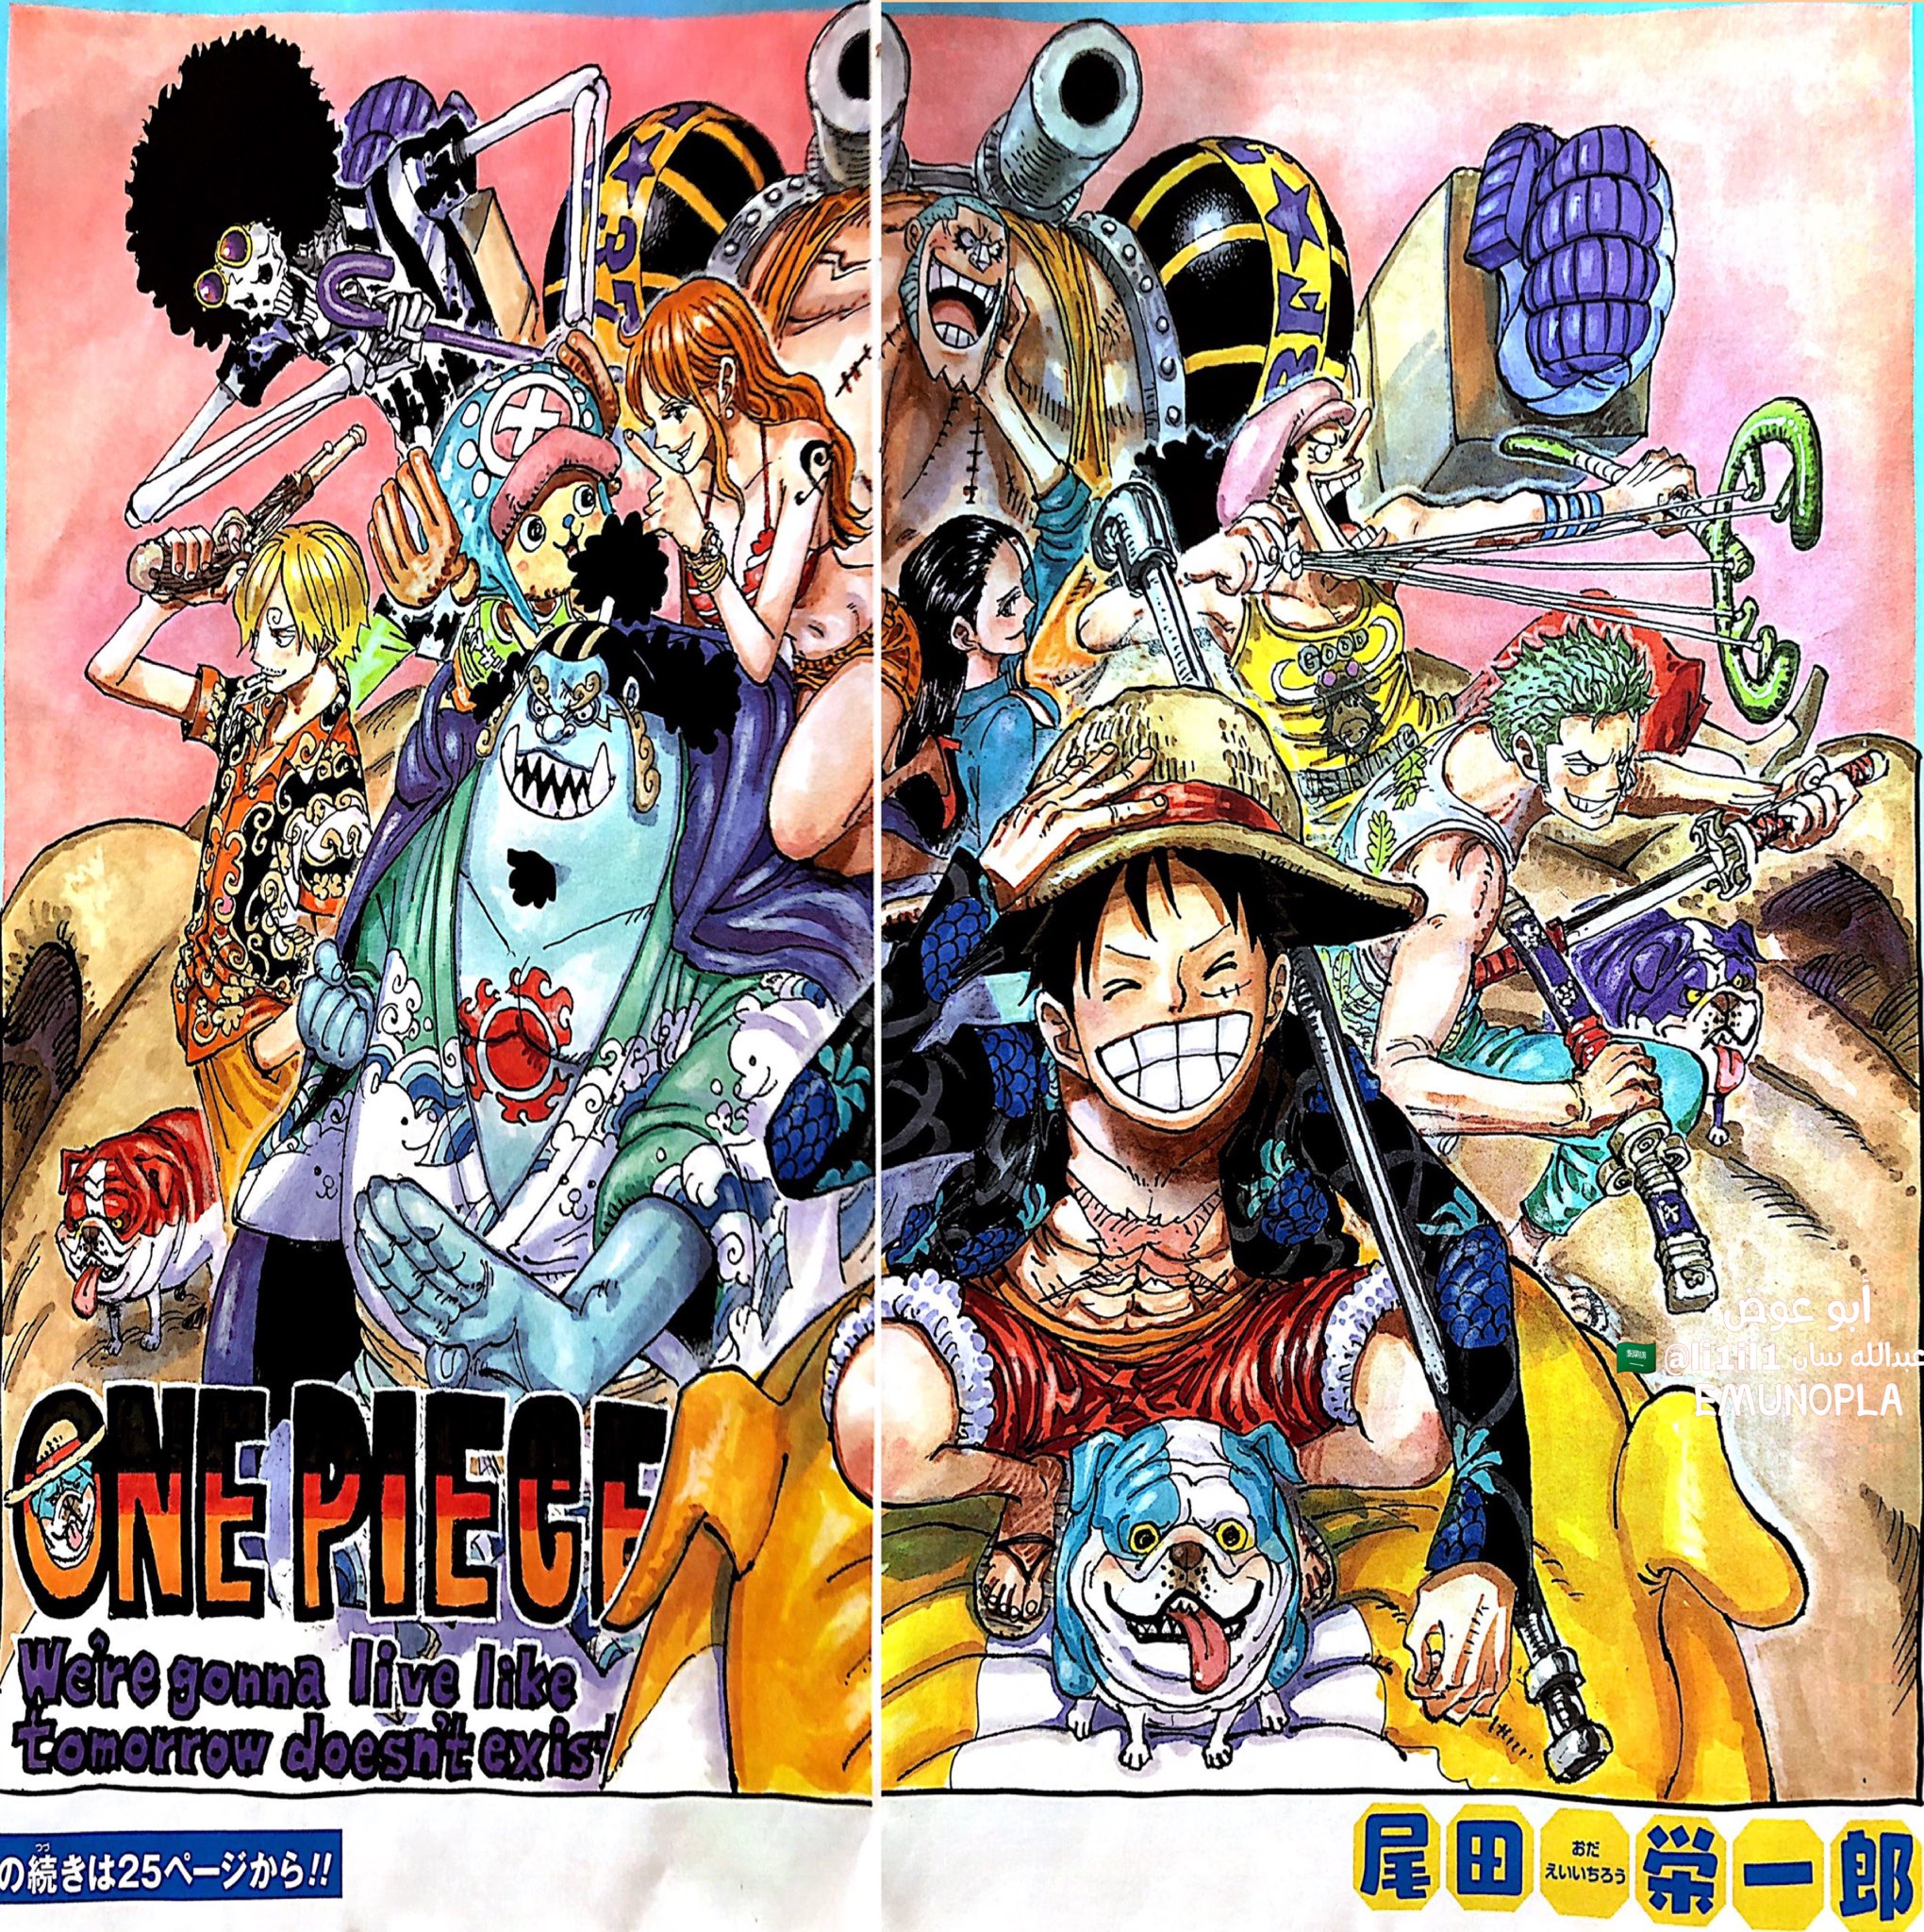 Spoiler One Piece Chapter 987 Spoiler Summaries And Images Worstgen